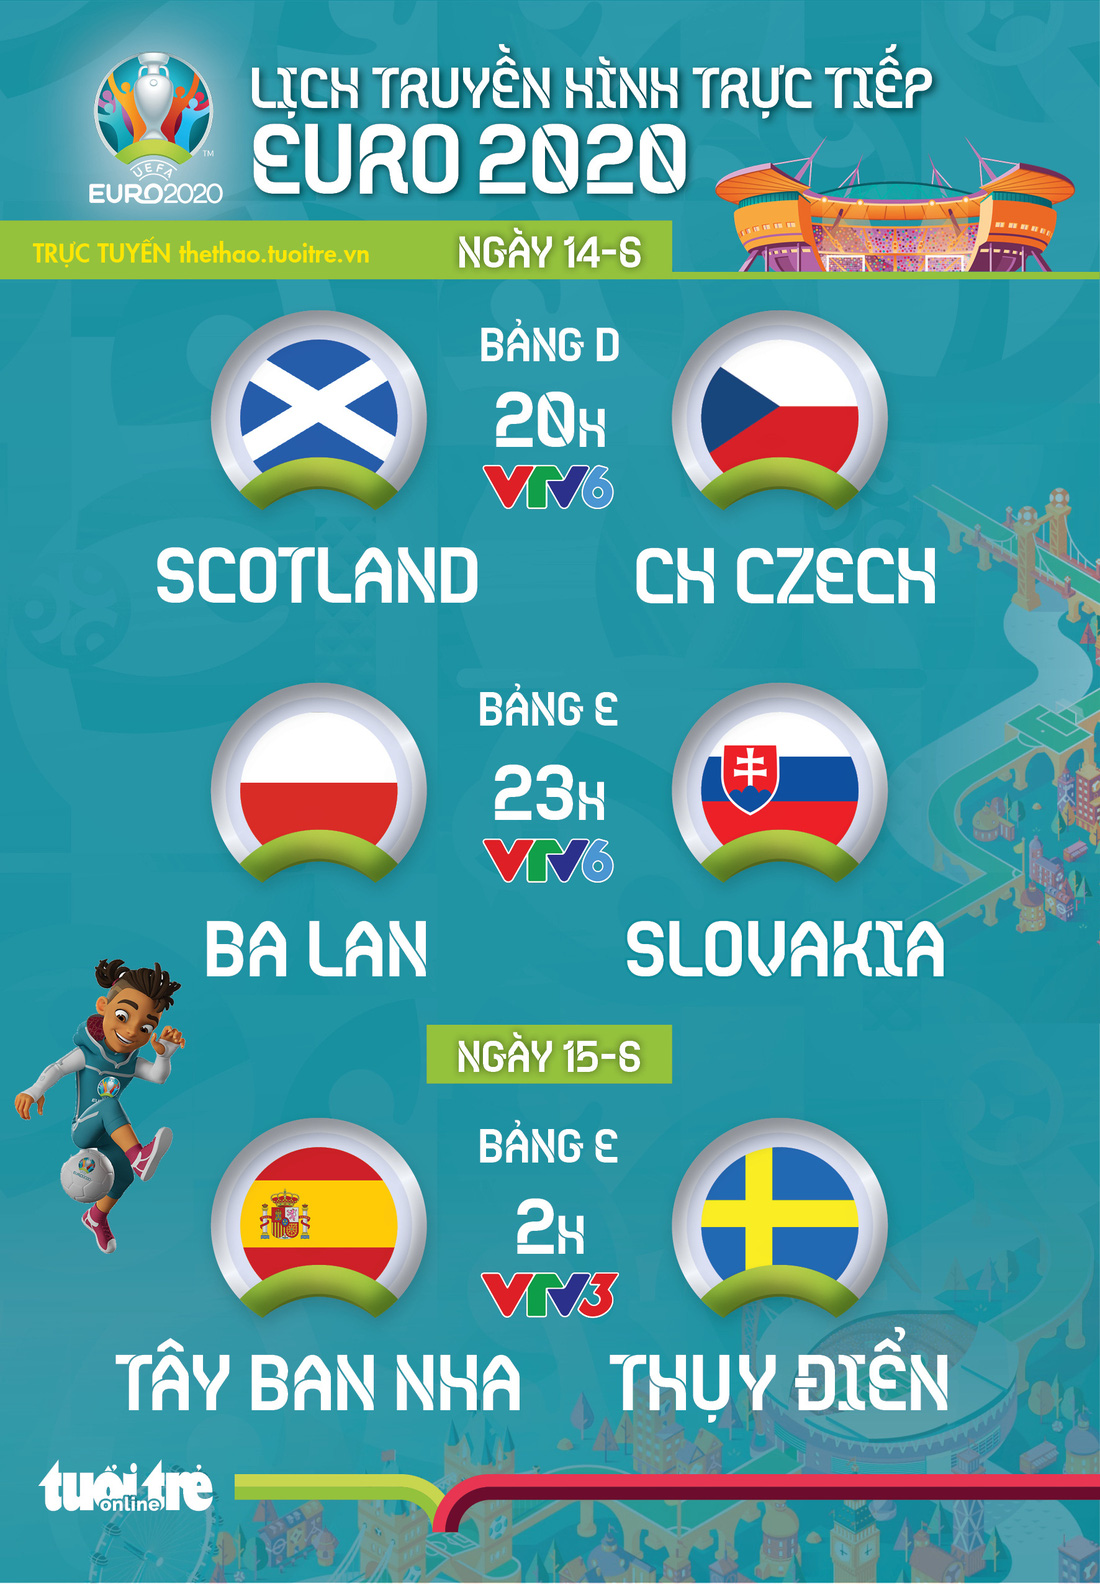 Lịch trực tiếp Euro 2020 ngày 14-6: Scotland - CH Czech, Ba Lan - Slovakia, Tây Ban Nha - Thụy Điển - Ảnh 1.